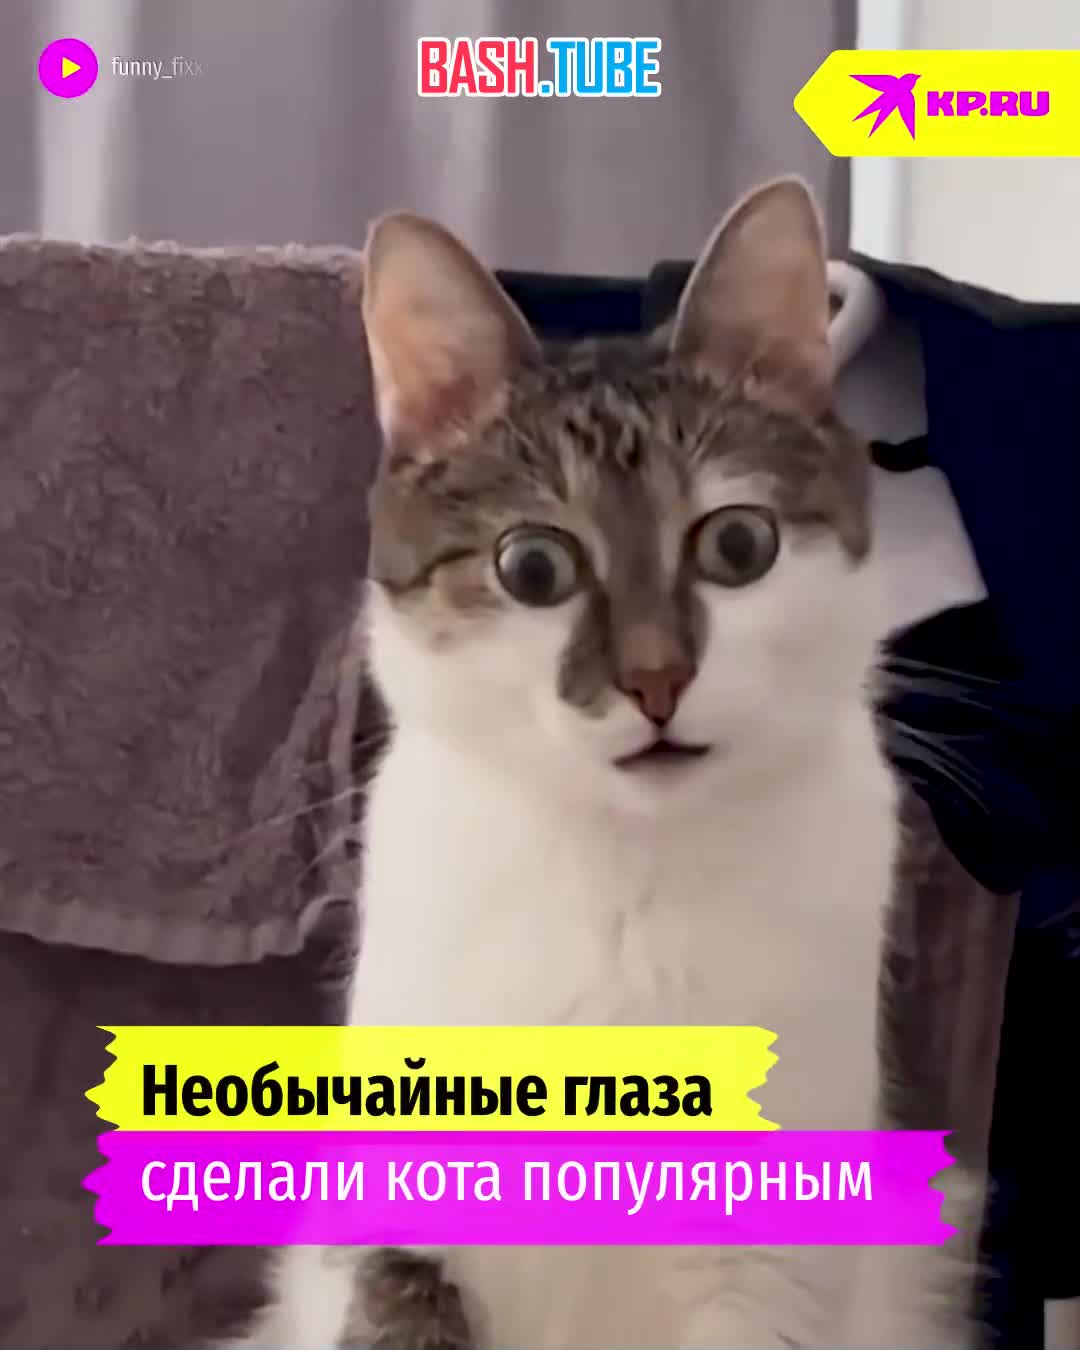  Лупоглазый кот-блогер из Барнаула по имени Фикс